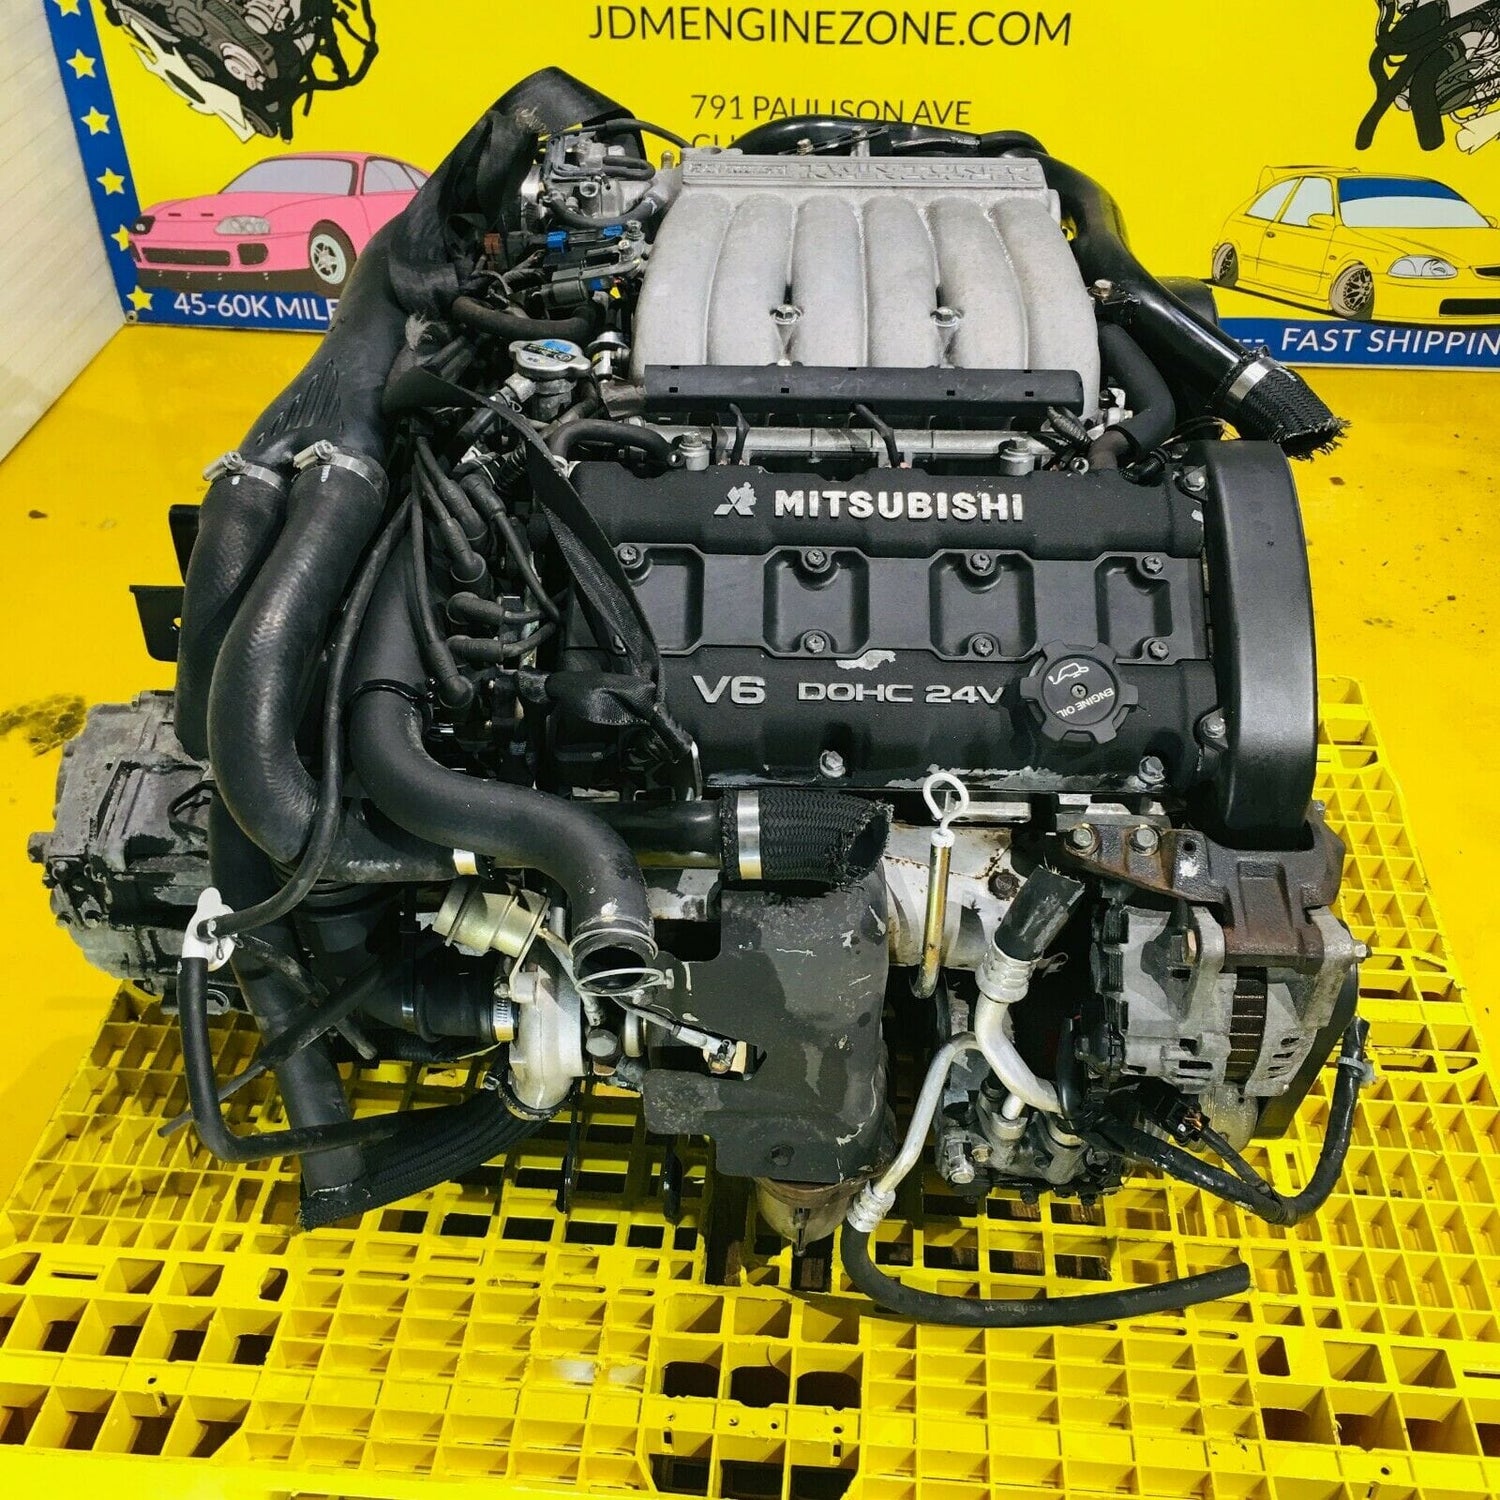 Dodge Stealth 1994-1997 Twin Turbo 3.0L V6 Engine Motor - 6G72TT (Engine Only)